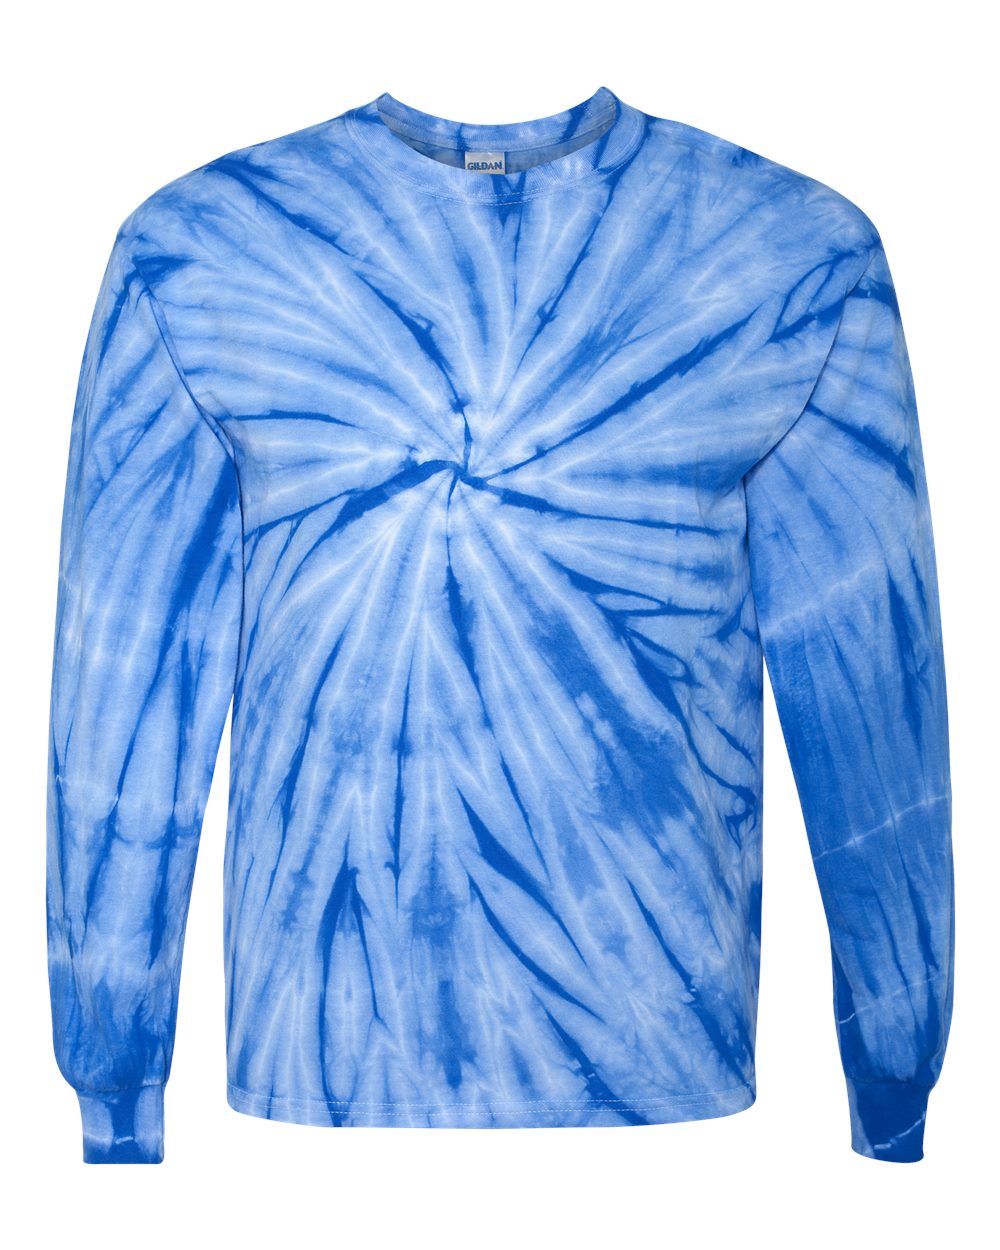 Dyenomite - Cyclone Pinwheel Tie-Dyed Long Sleeve T-Shirt